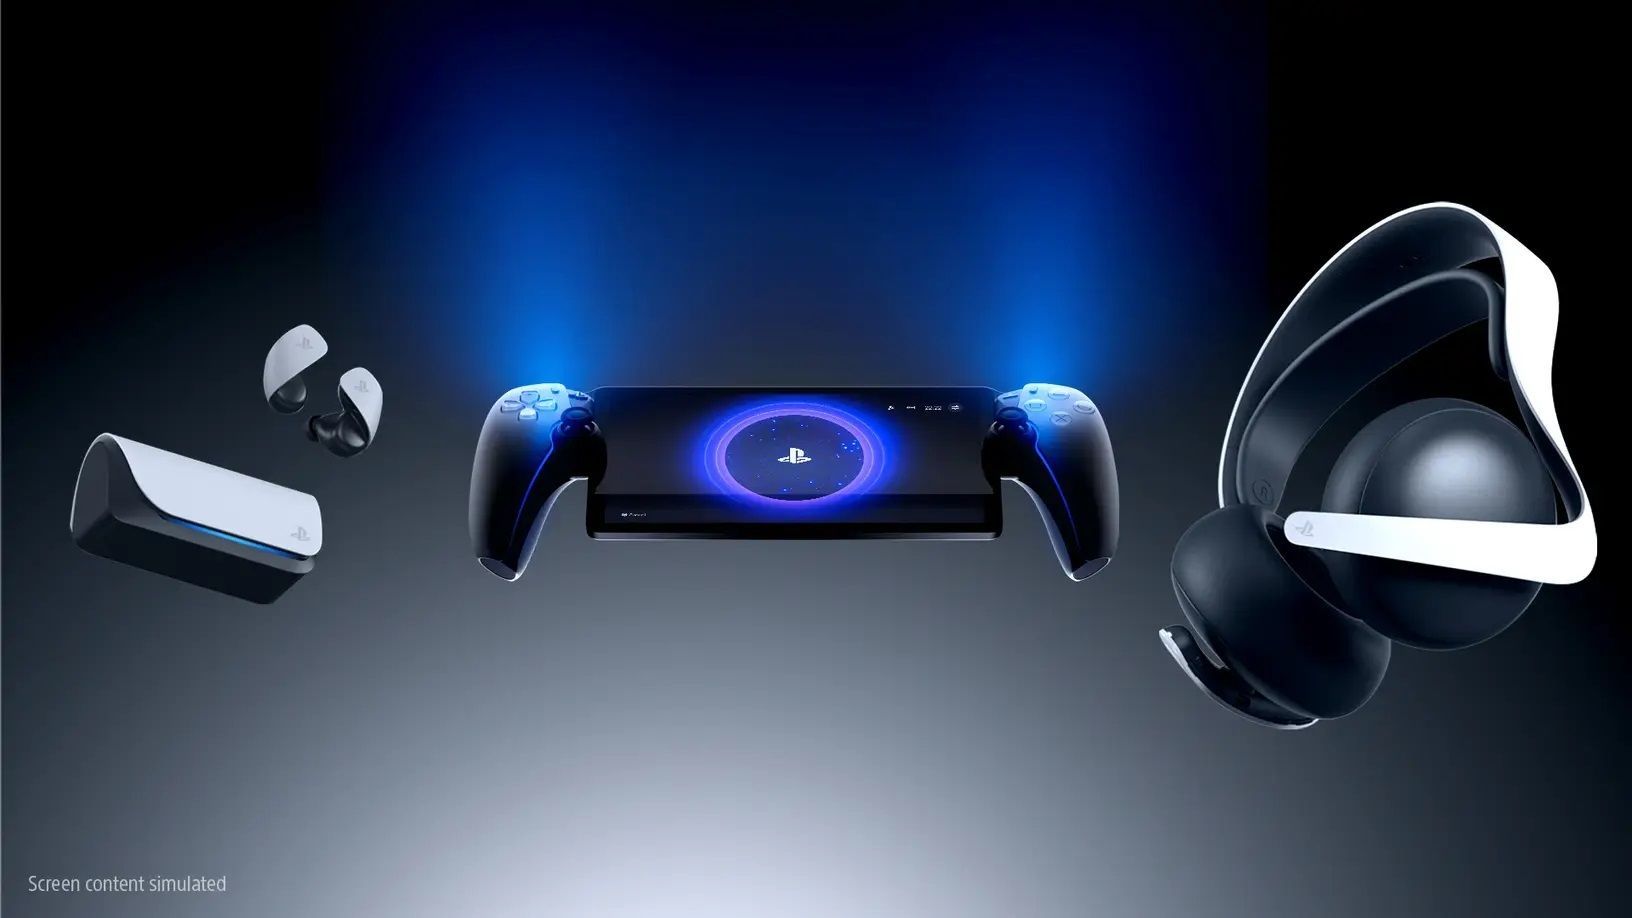 PlayStation Portal sera moins cher que craint - plus cher qu’espéré